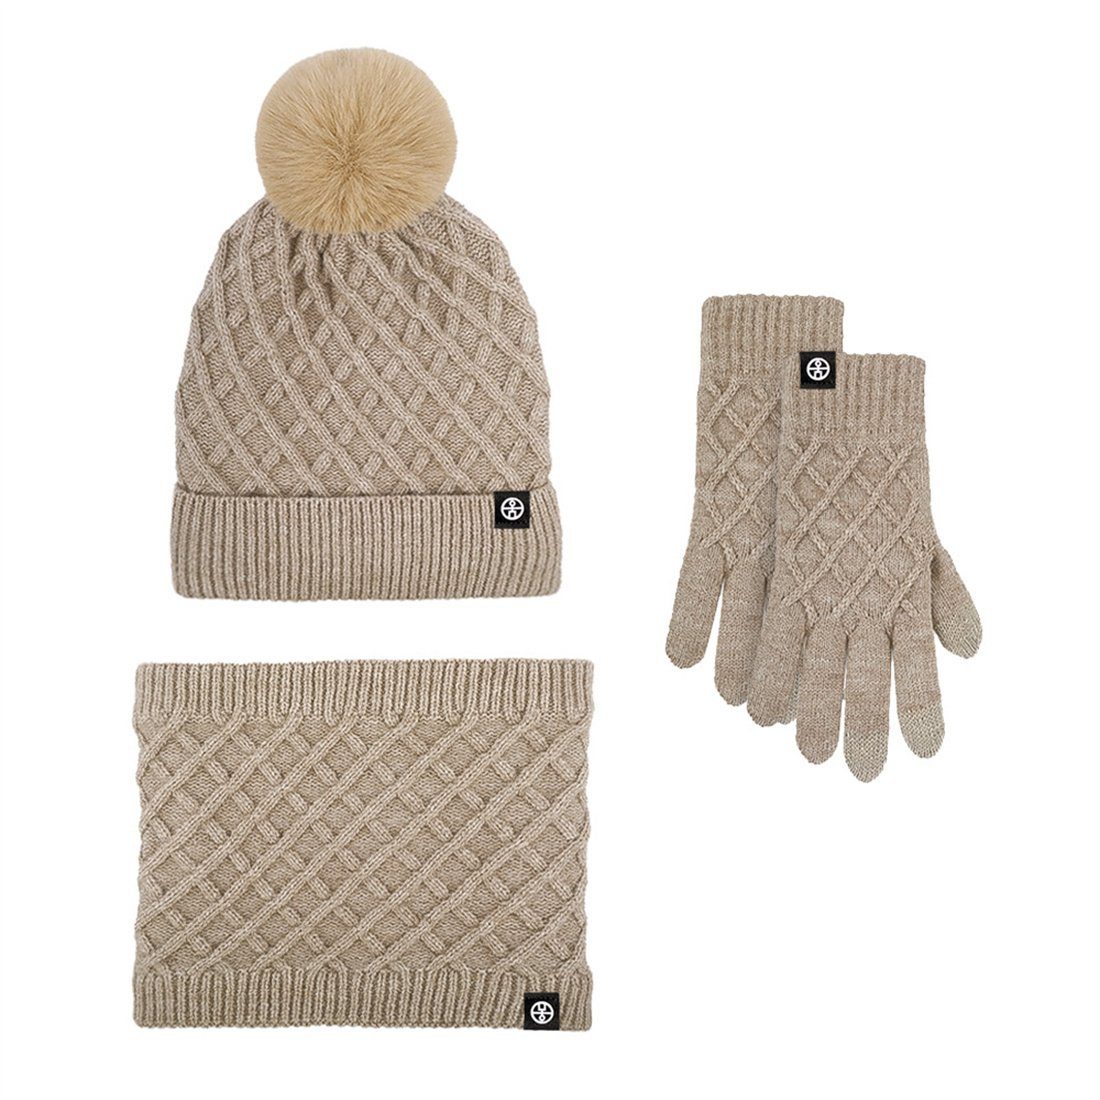 DÖRÖY Strickmütze Winter gepolstert Warm Mütze Schal Handschuhe 3 Stück, Warm Set khaki